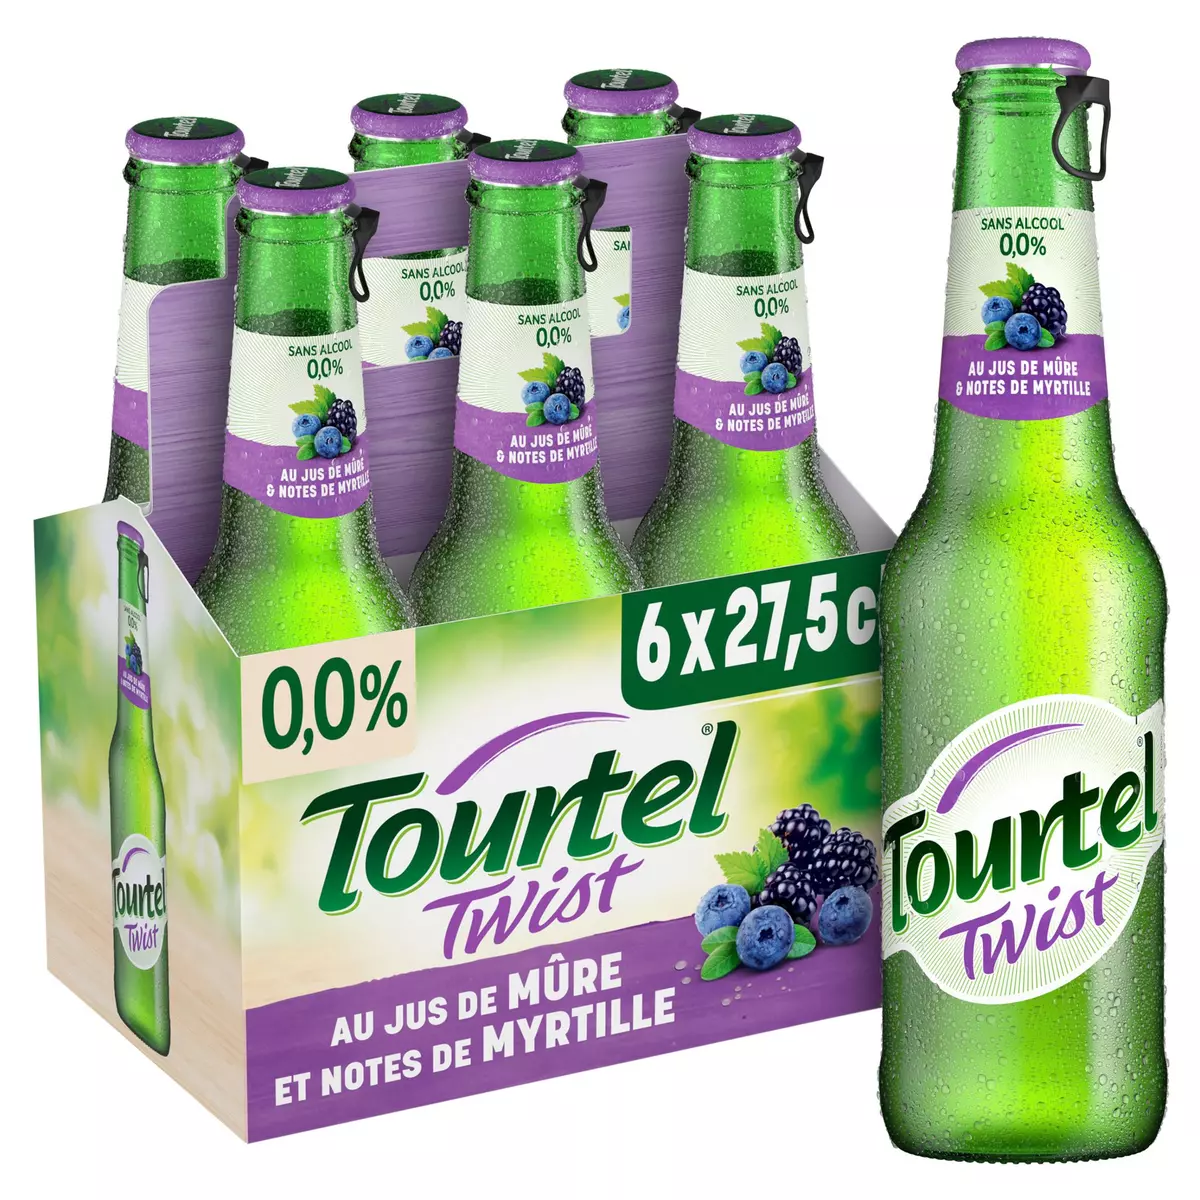 TOURTEL TWIST Bière sans alcool 0.0% au jus de mûre et notes de myrtille 6x27.5cl